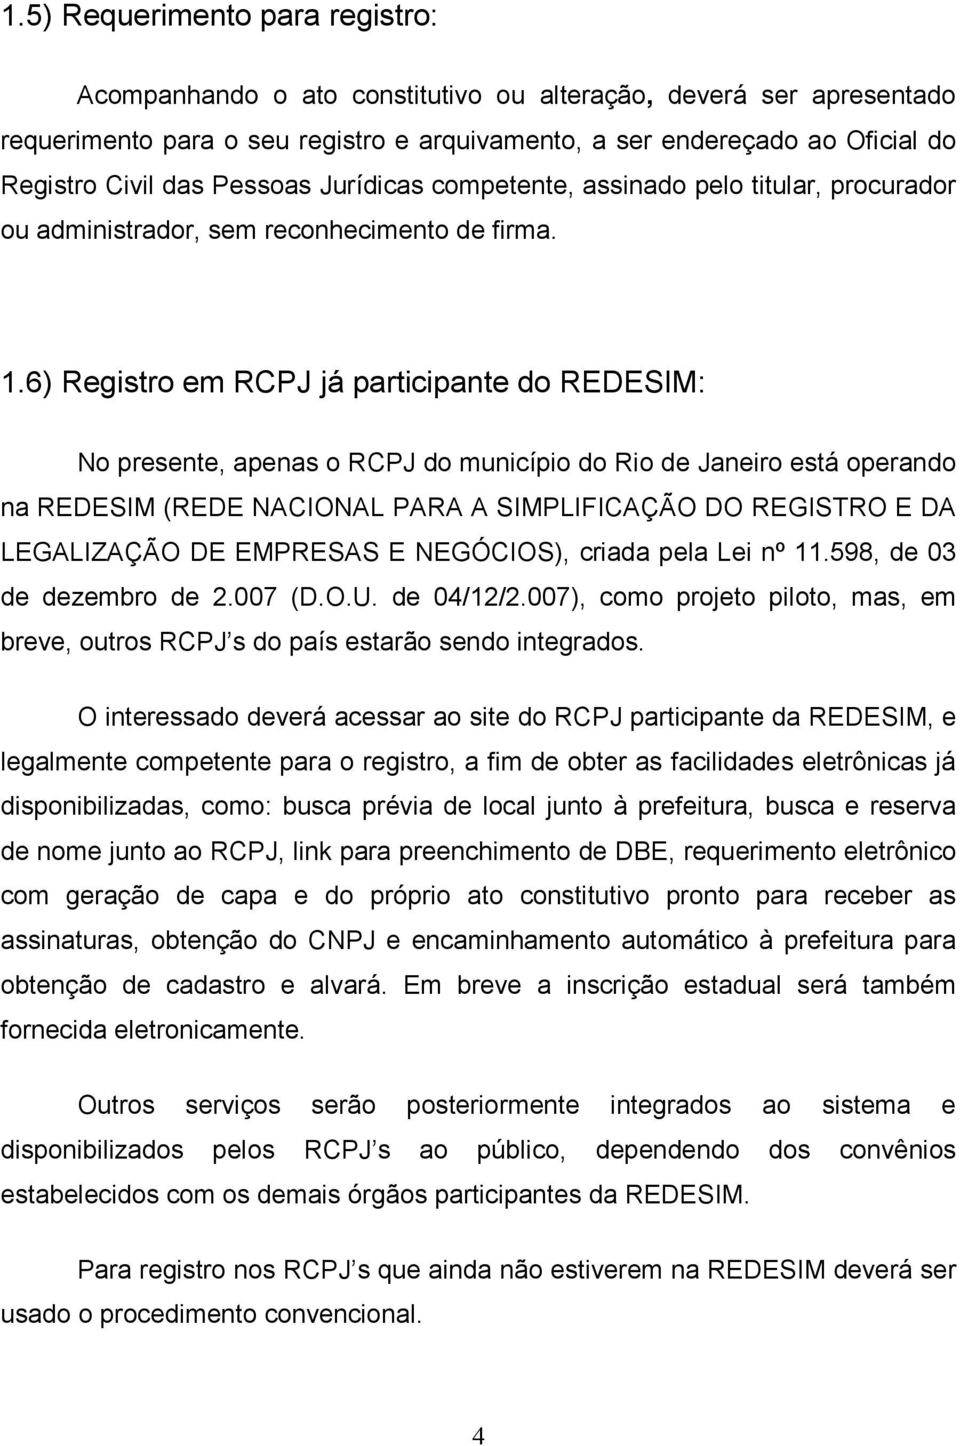 6) Registro em RCPJ já participante do REDESIM: No presente, apenas o RCPJ do município do Rio de Janeiro está operando na REDESIM (REDE NACIONAL PARA A SIMPLIFICAÇÃO DO REGISTRO E DA LEGALIZAÇÃO DE